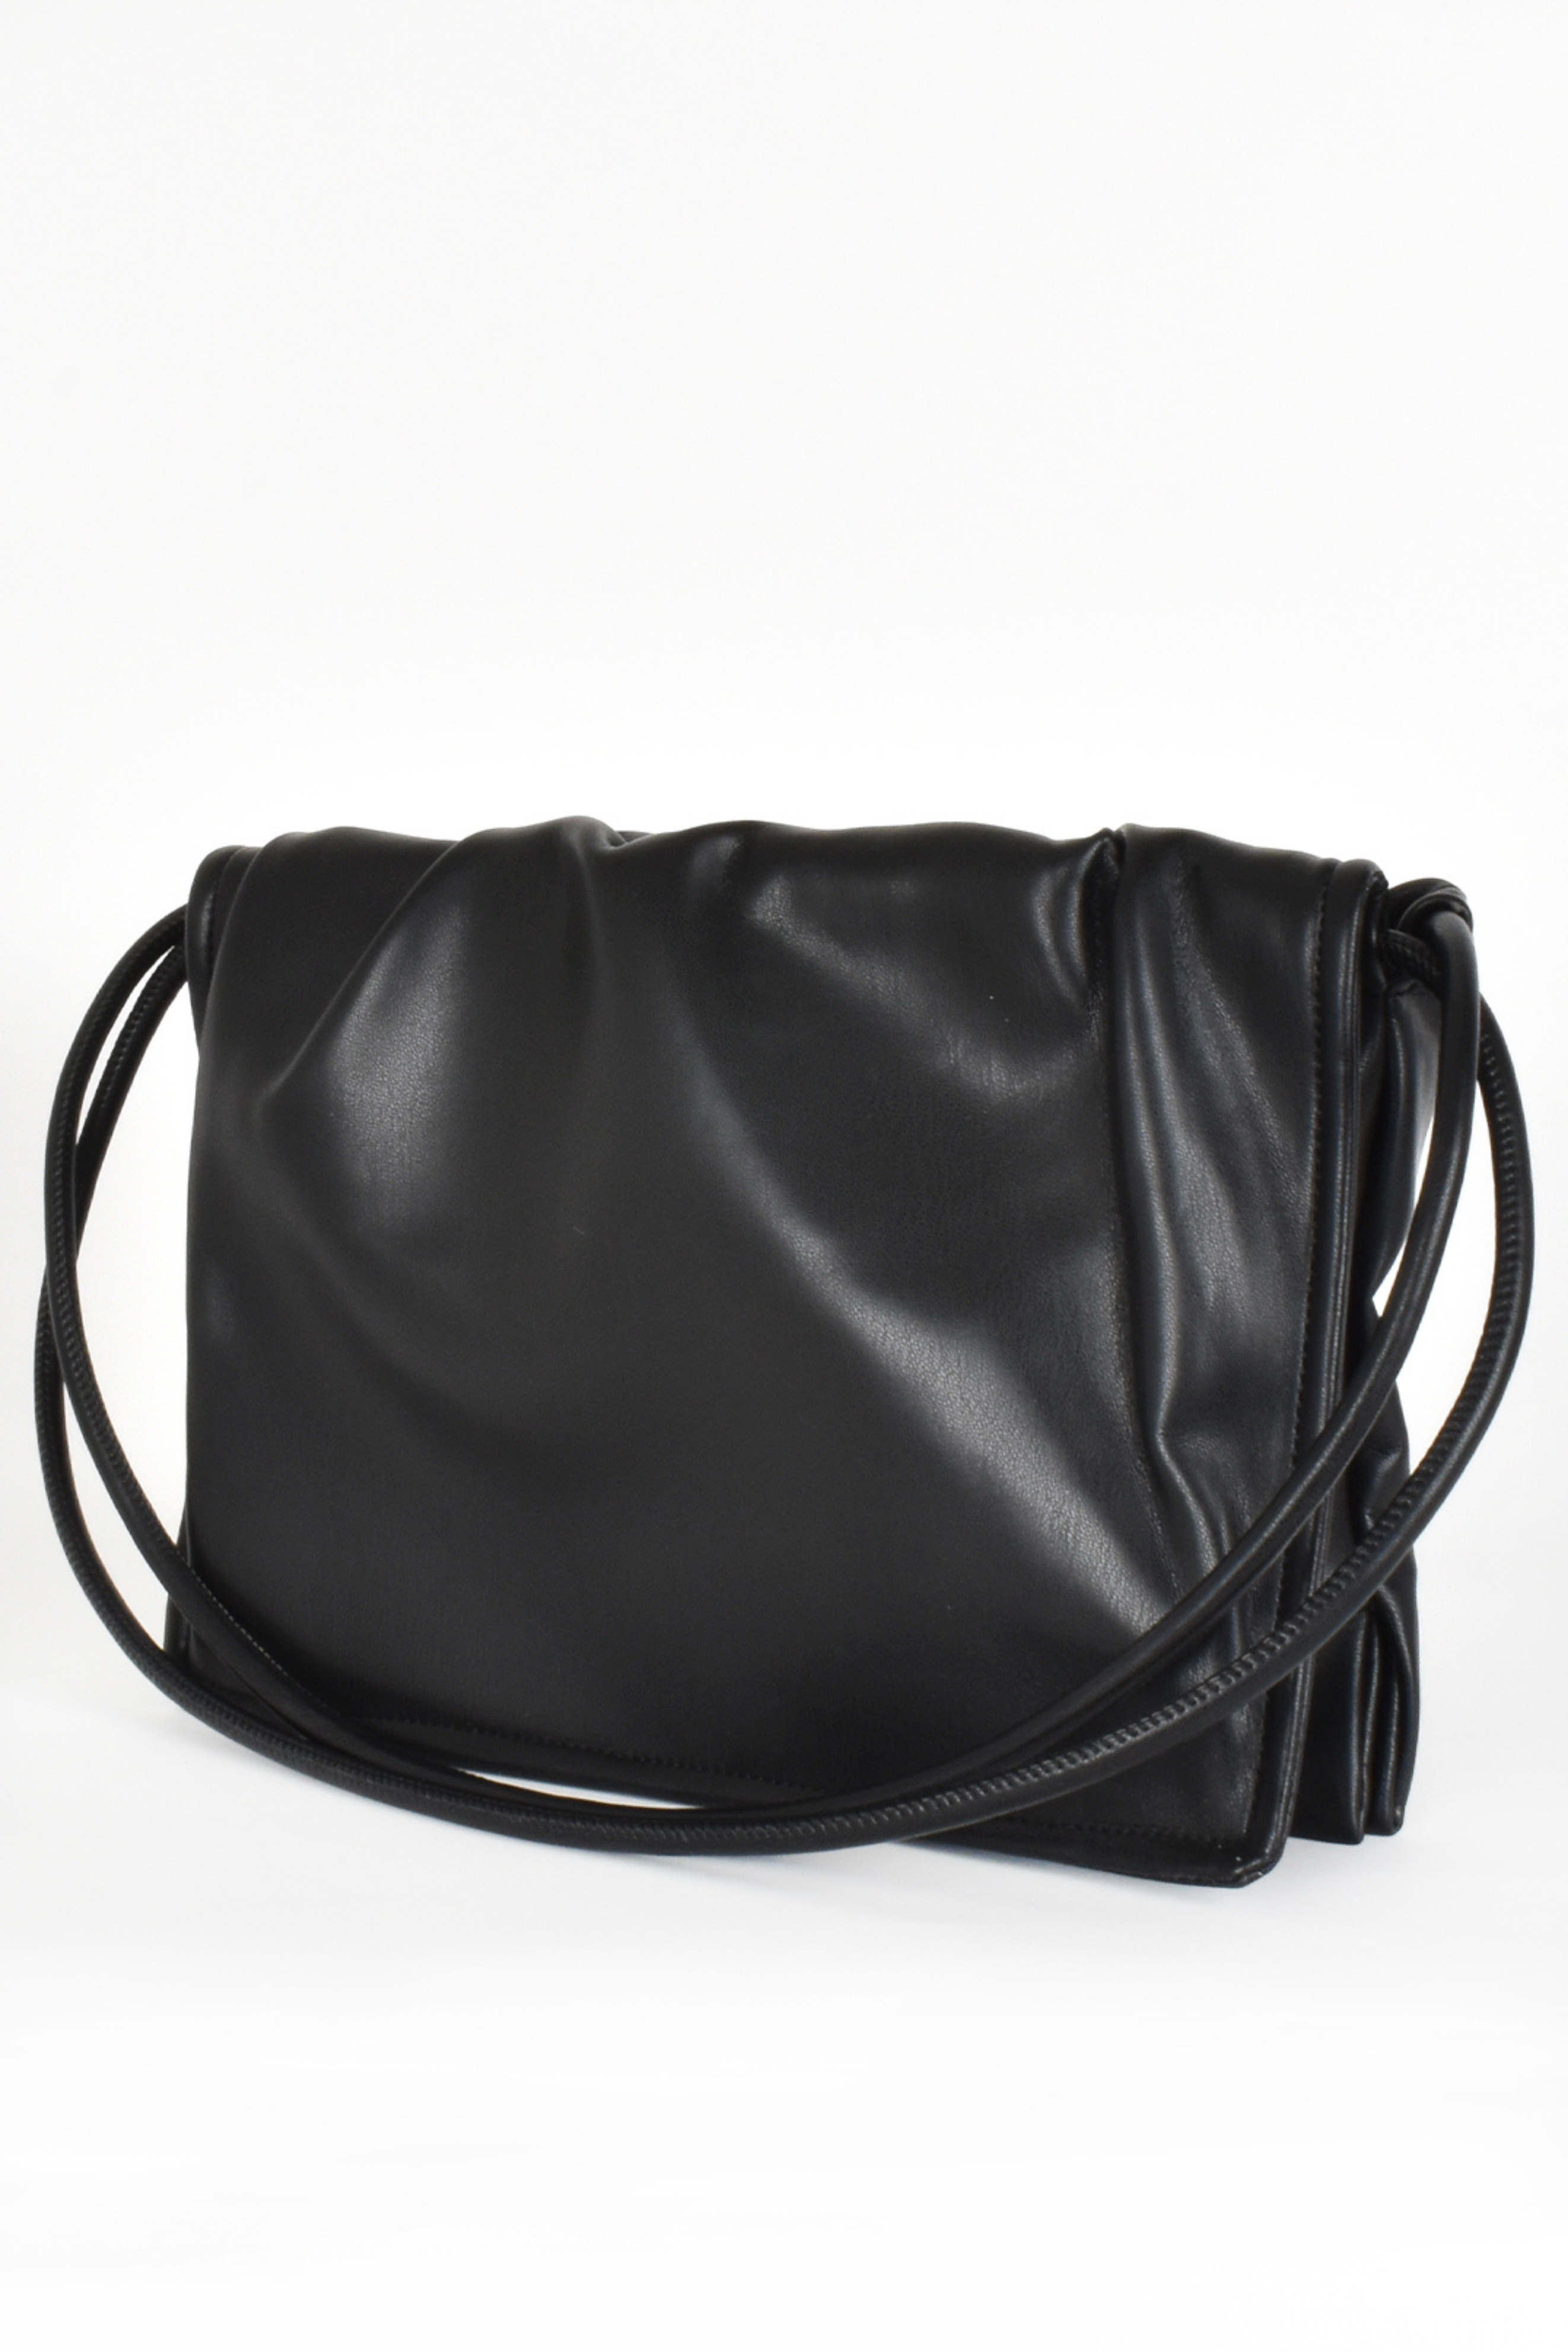 Arabella gathered foldover shoulder bag in Black